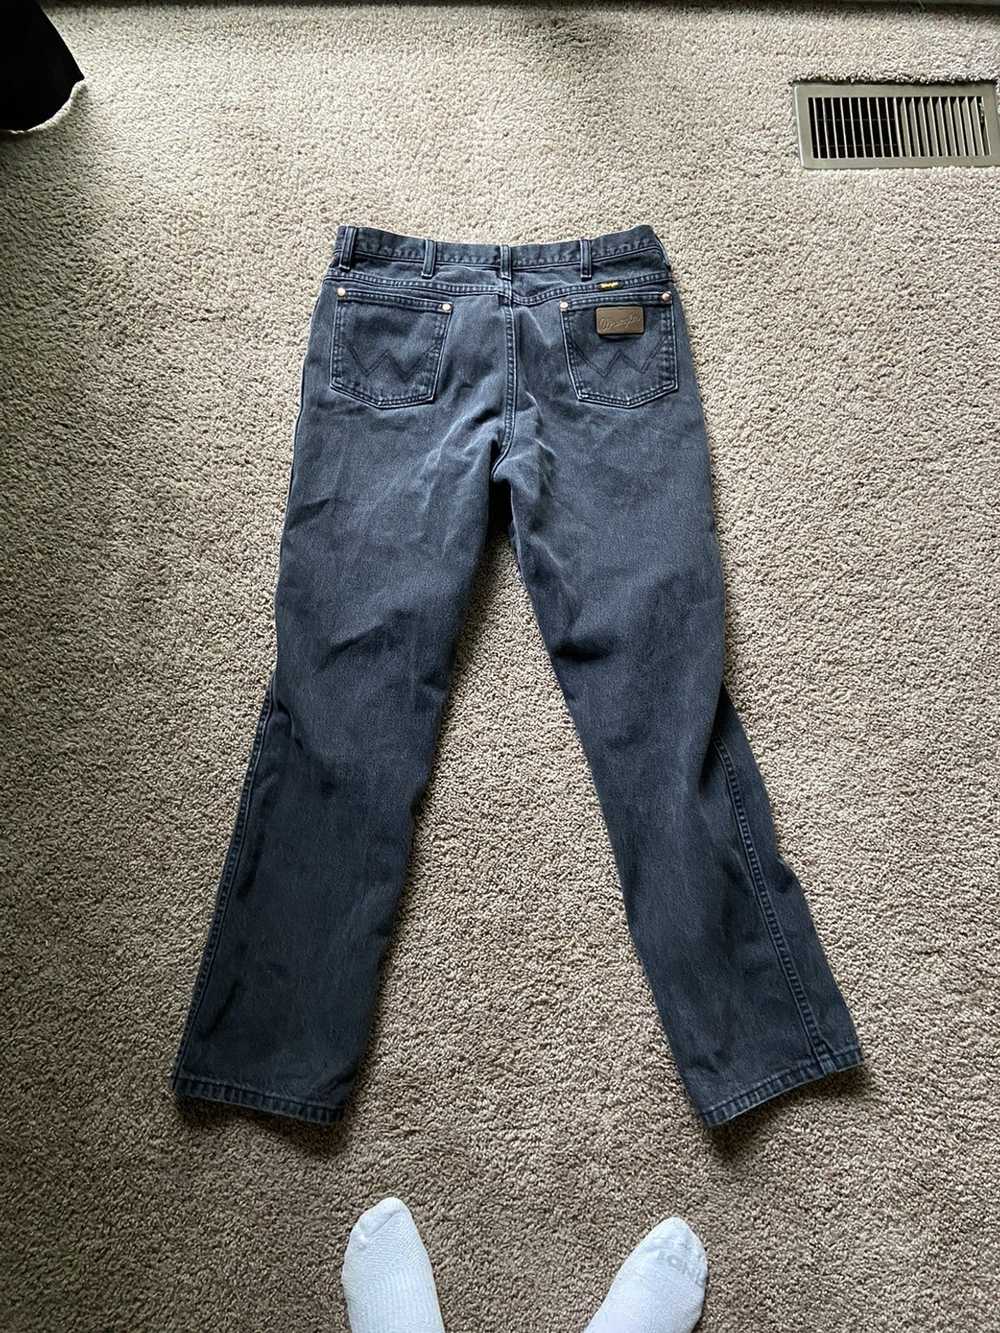 Vintage × Wrangler Vintage wrangler jeans - image 3